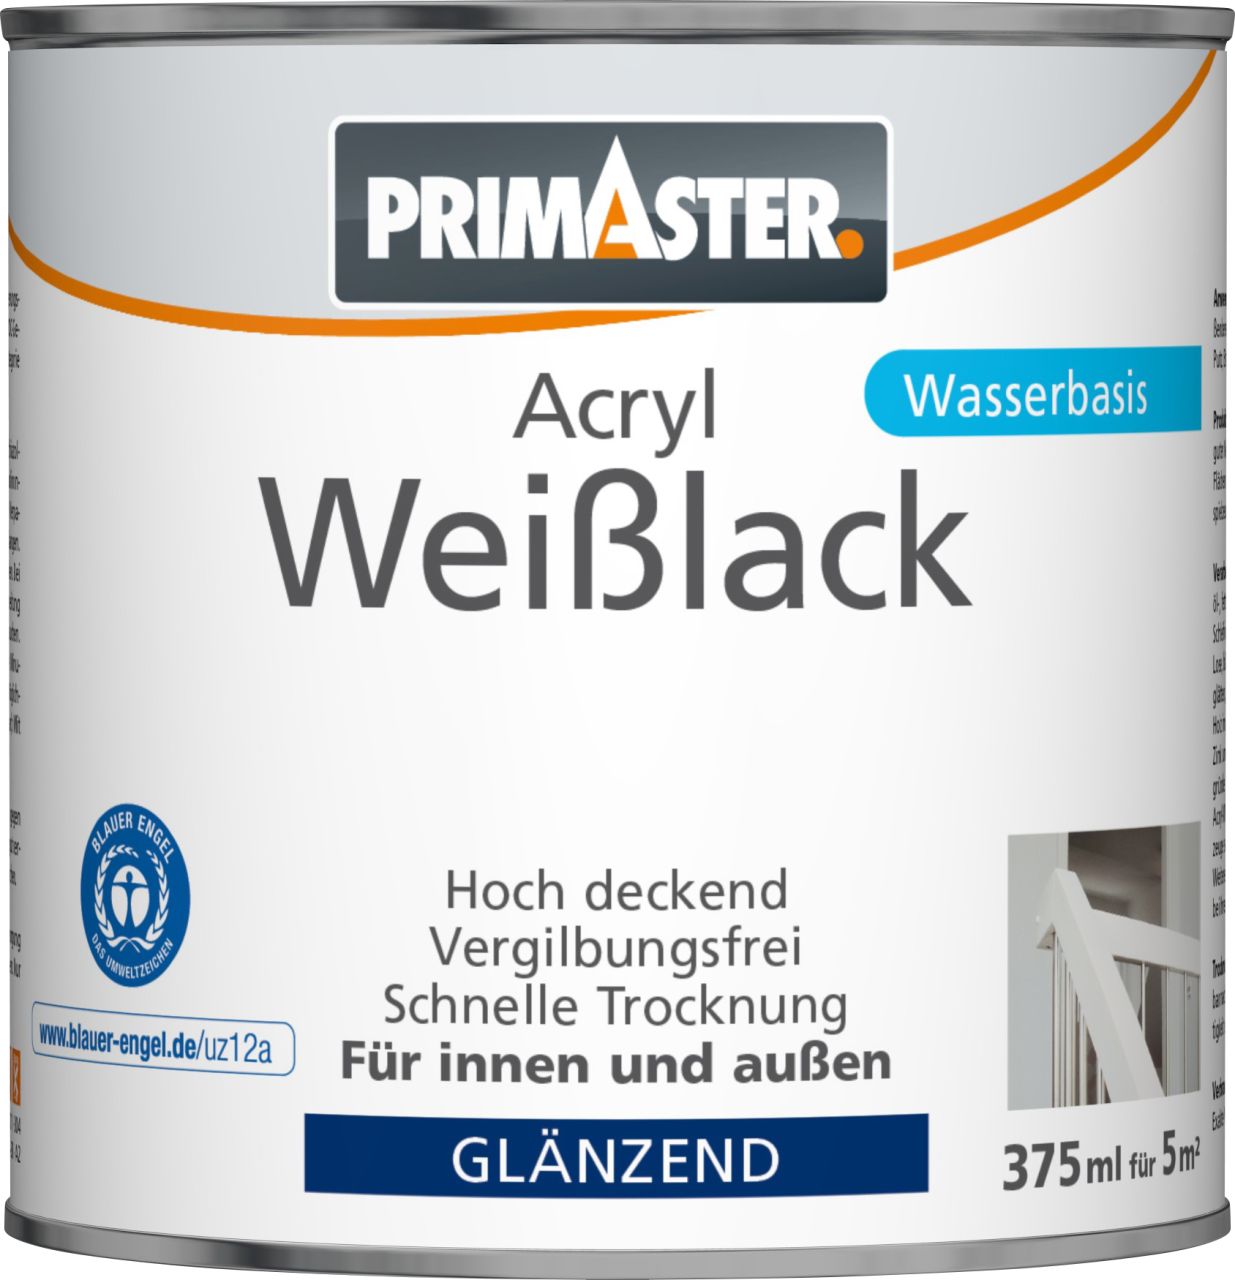 Primaster Acryl Weißlack 375 ml glänzend von Primaster